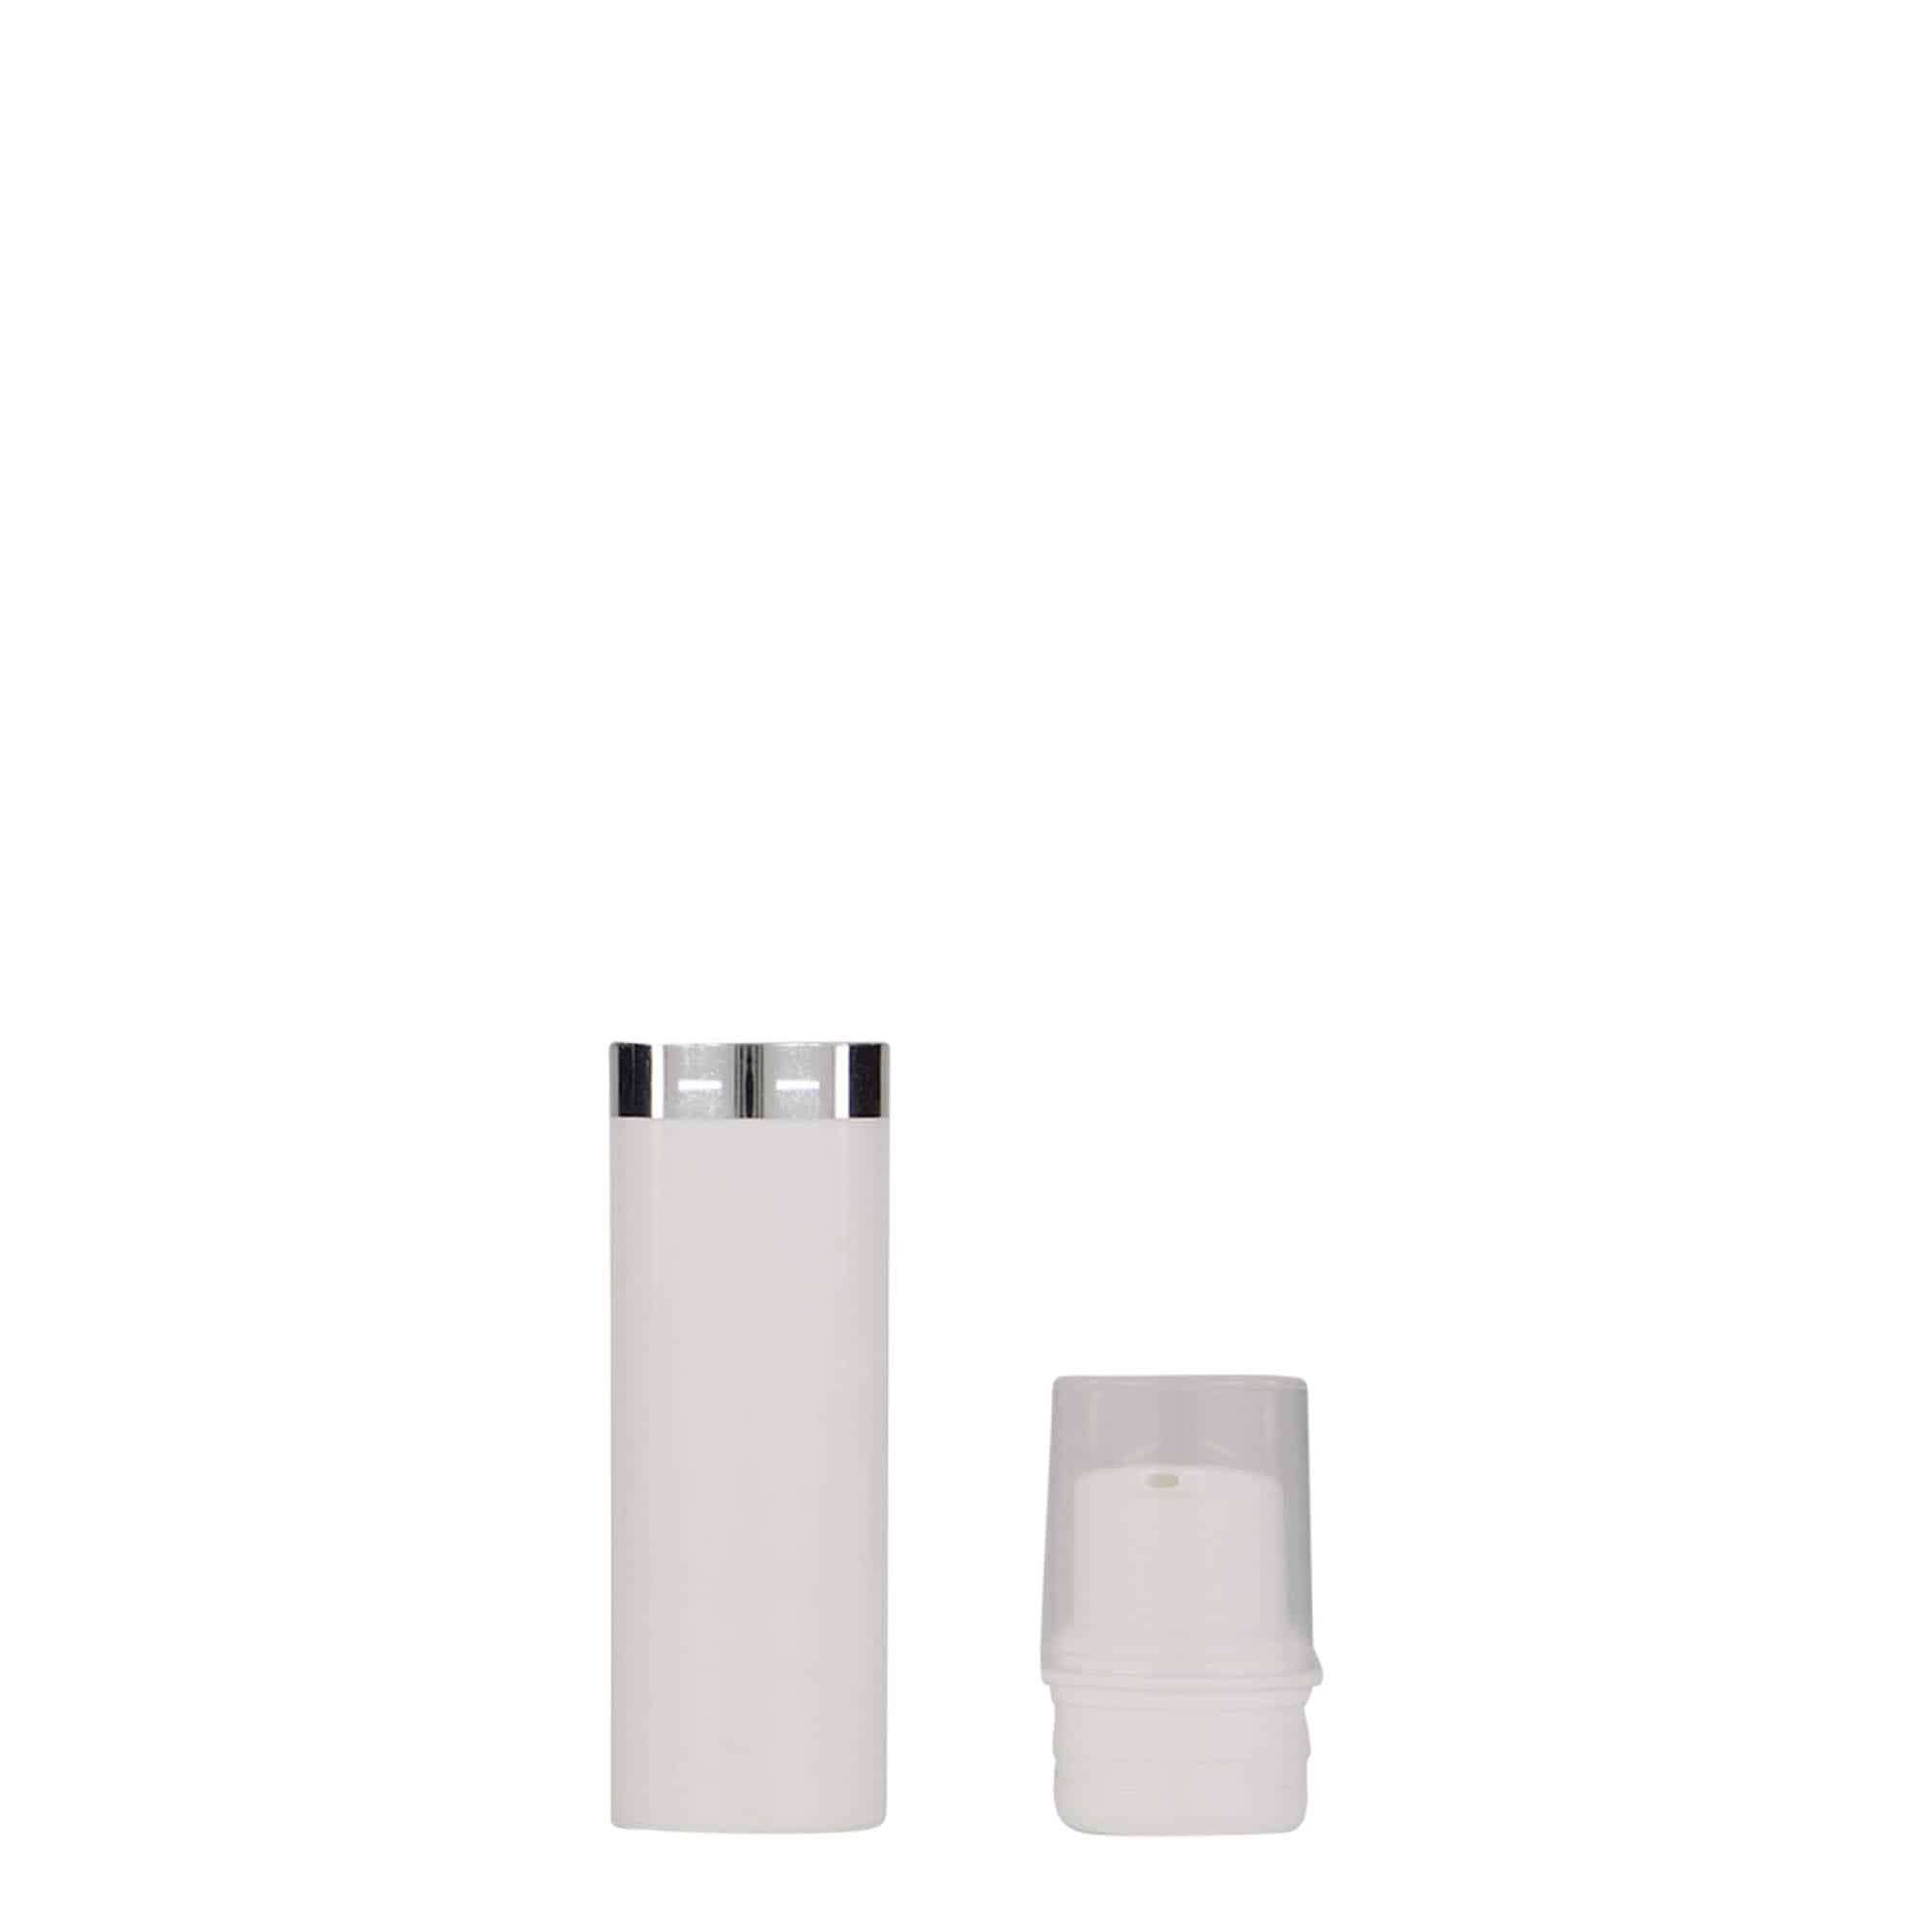 10 ml airless dispenser 'Nano', PP plastic, white